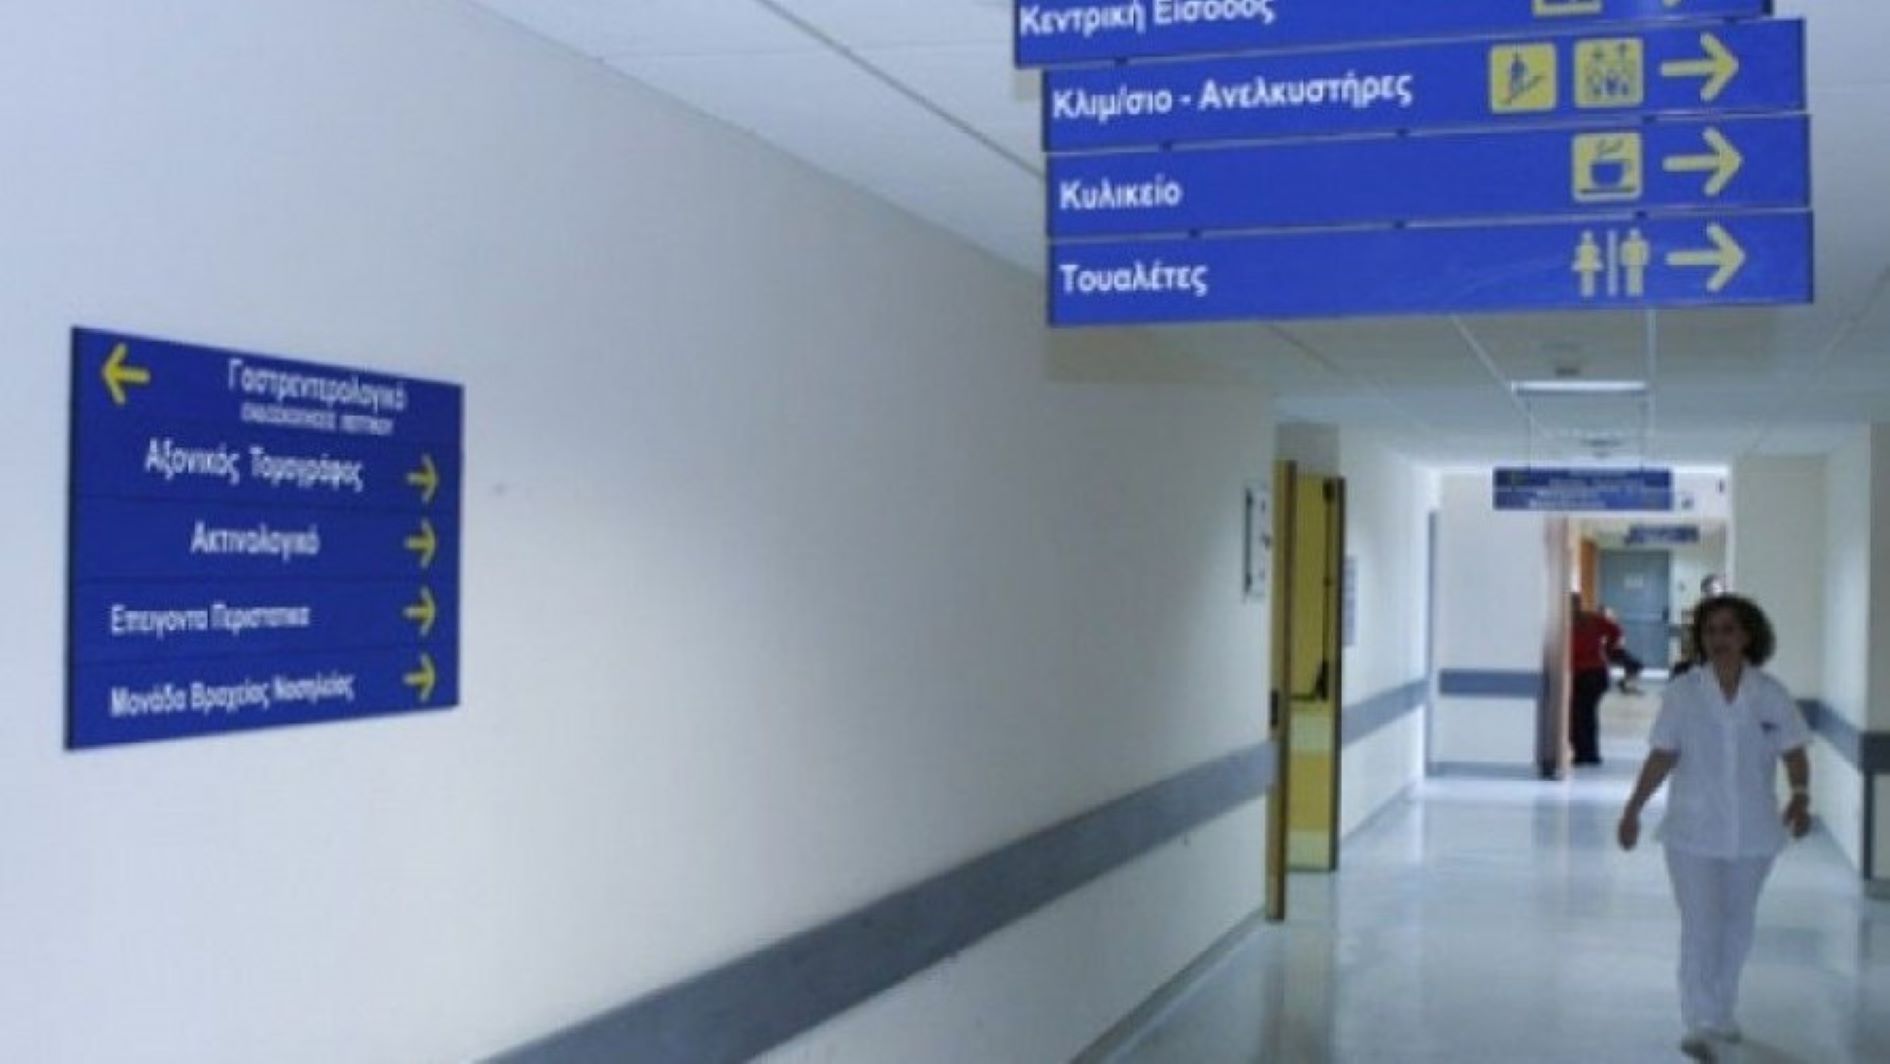 Χωρίς αξονικό τομογράφο το Νοσοκομείο Βόλου, λόγω βλάβης